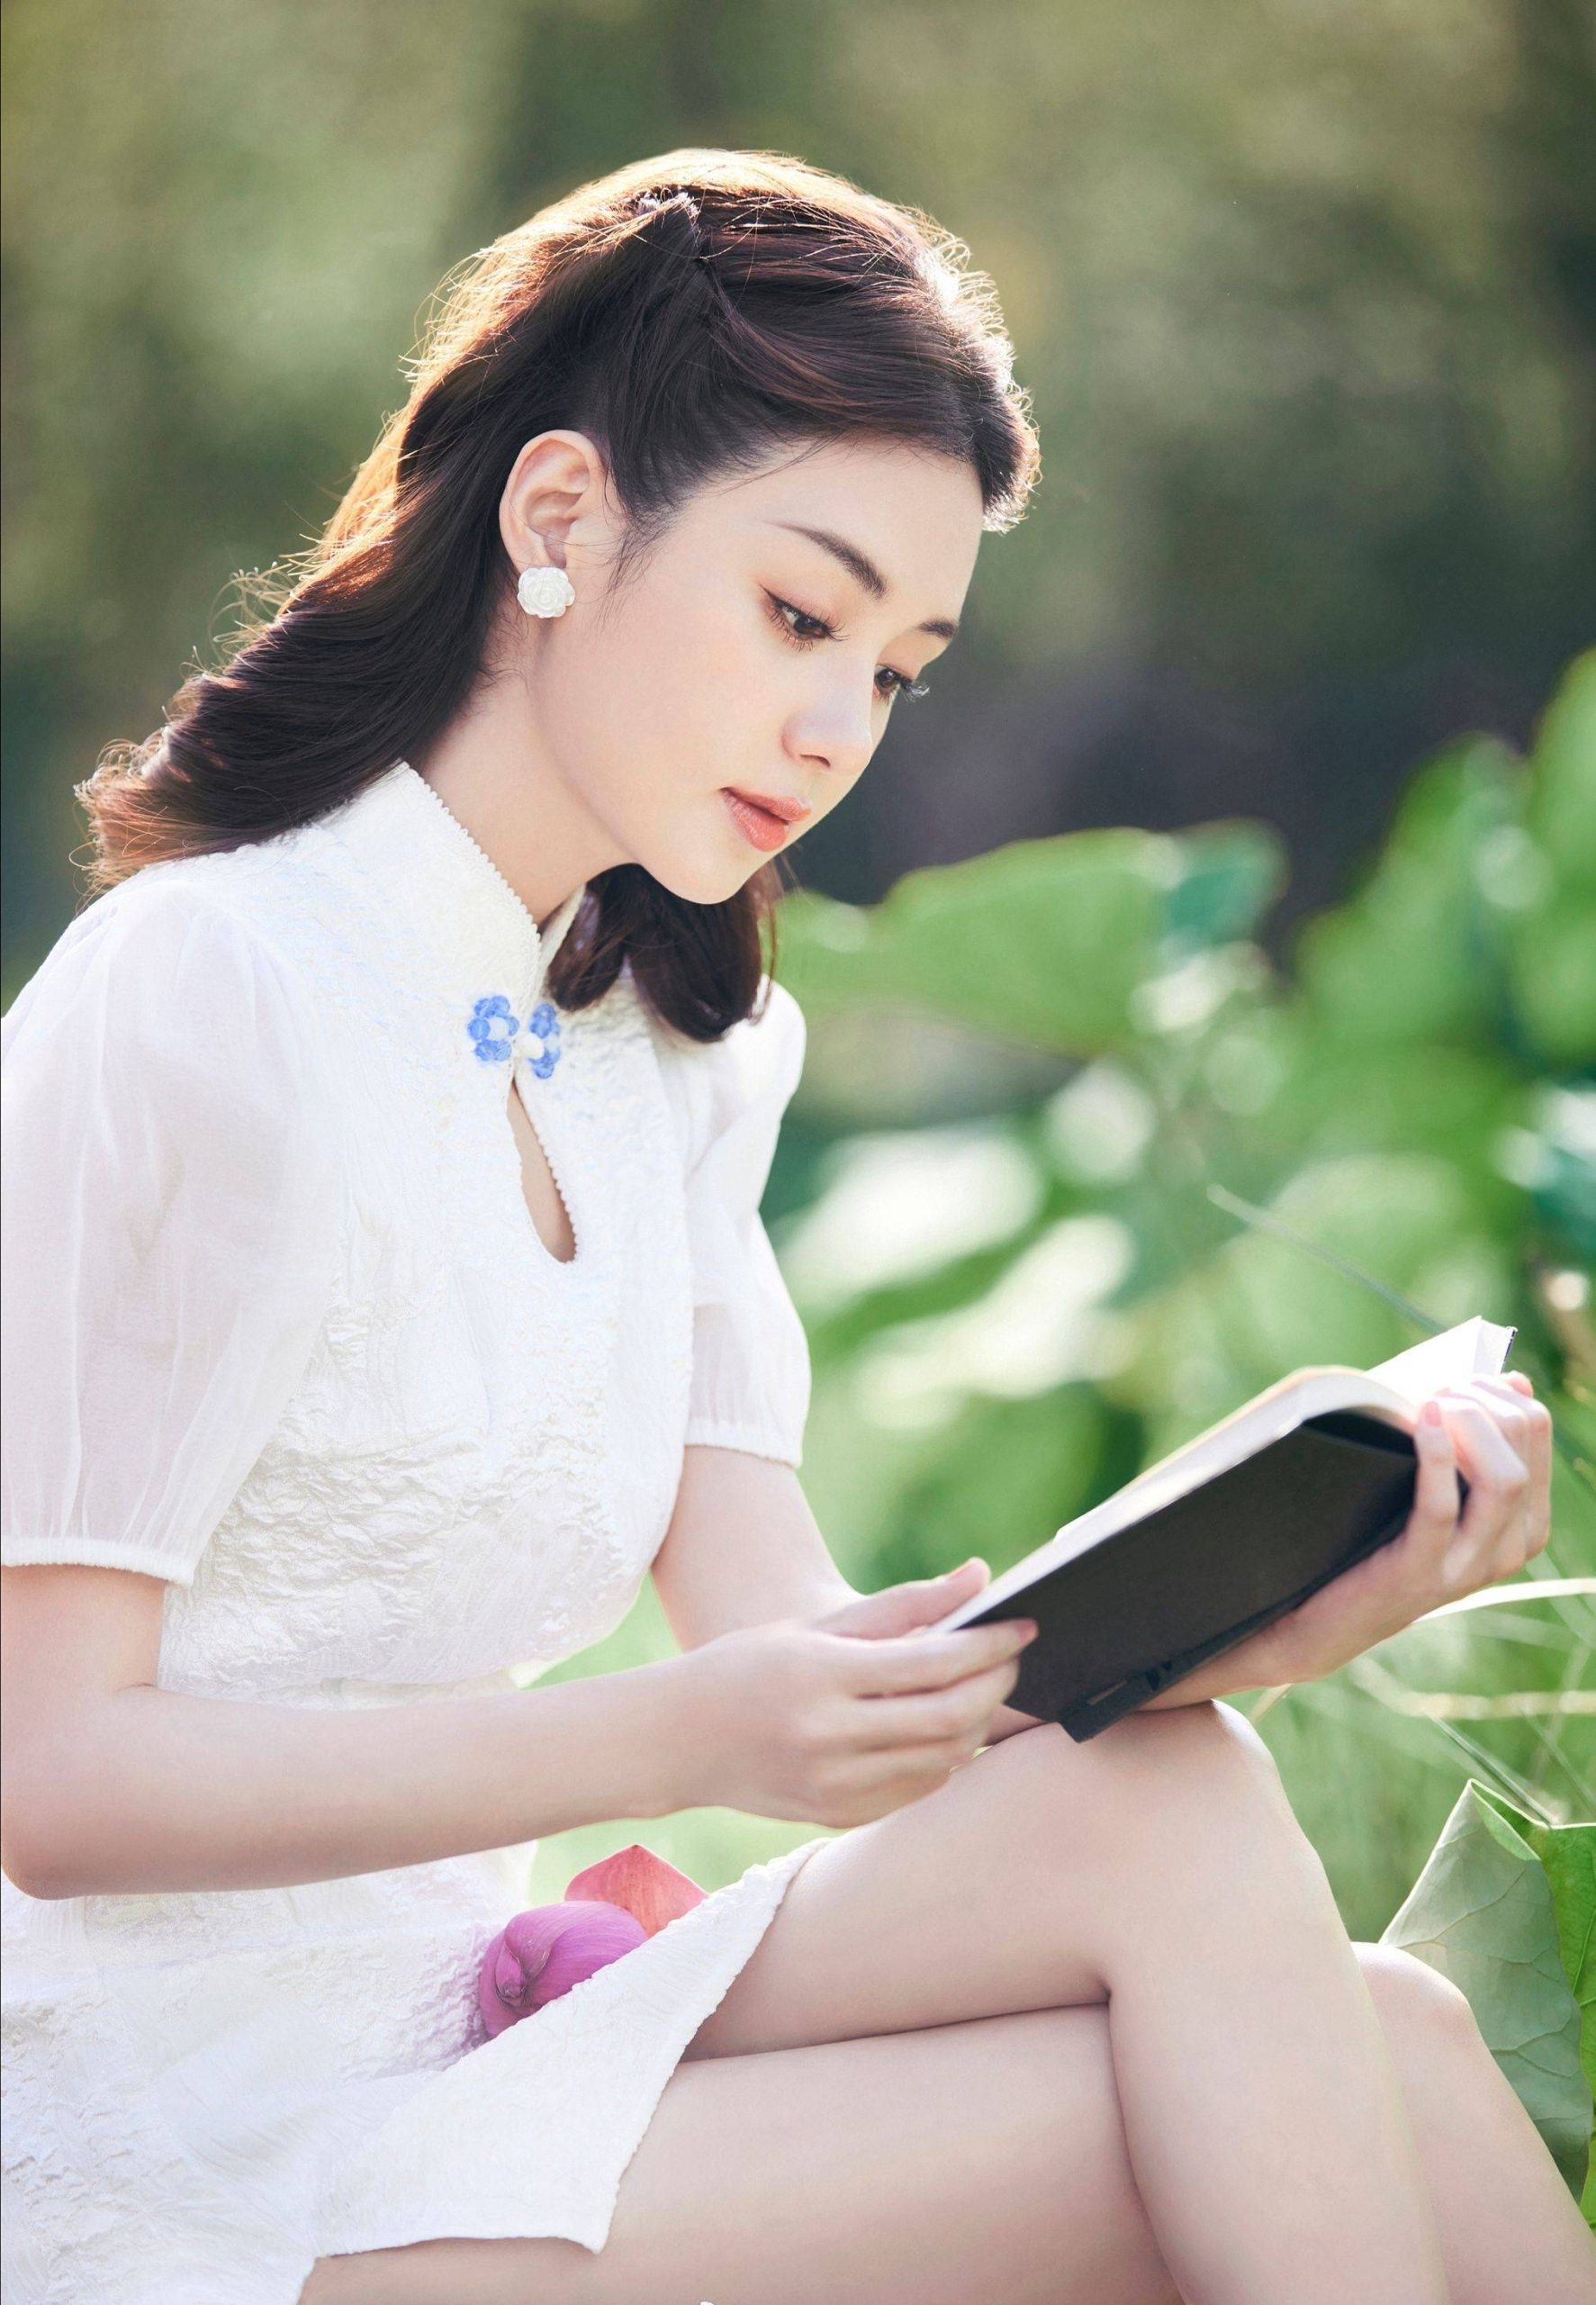 郑合惠子优雅恬静写真,白色旗袍衬托出婀娜身姿